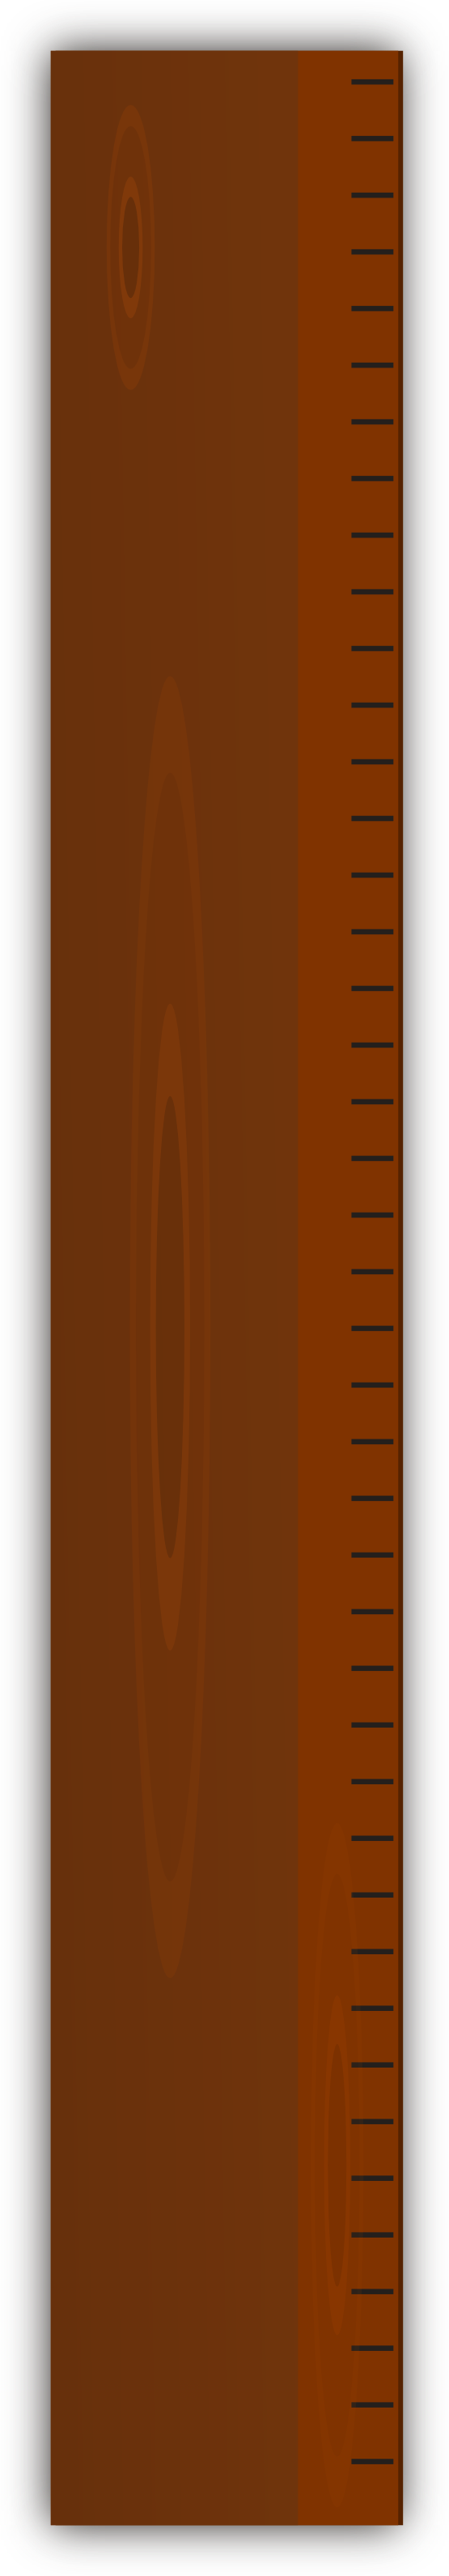 Ruler brown